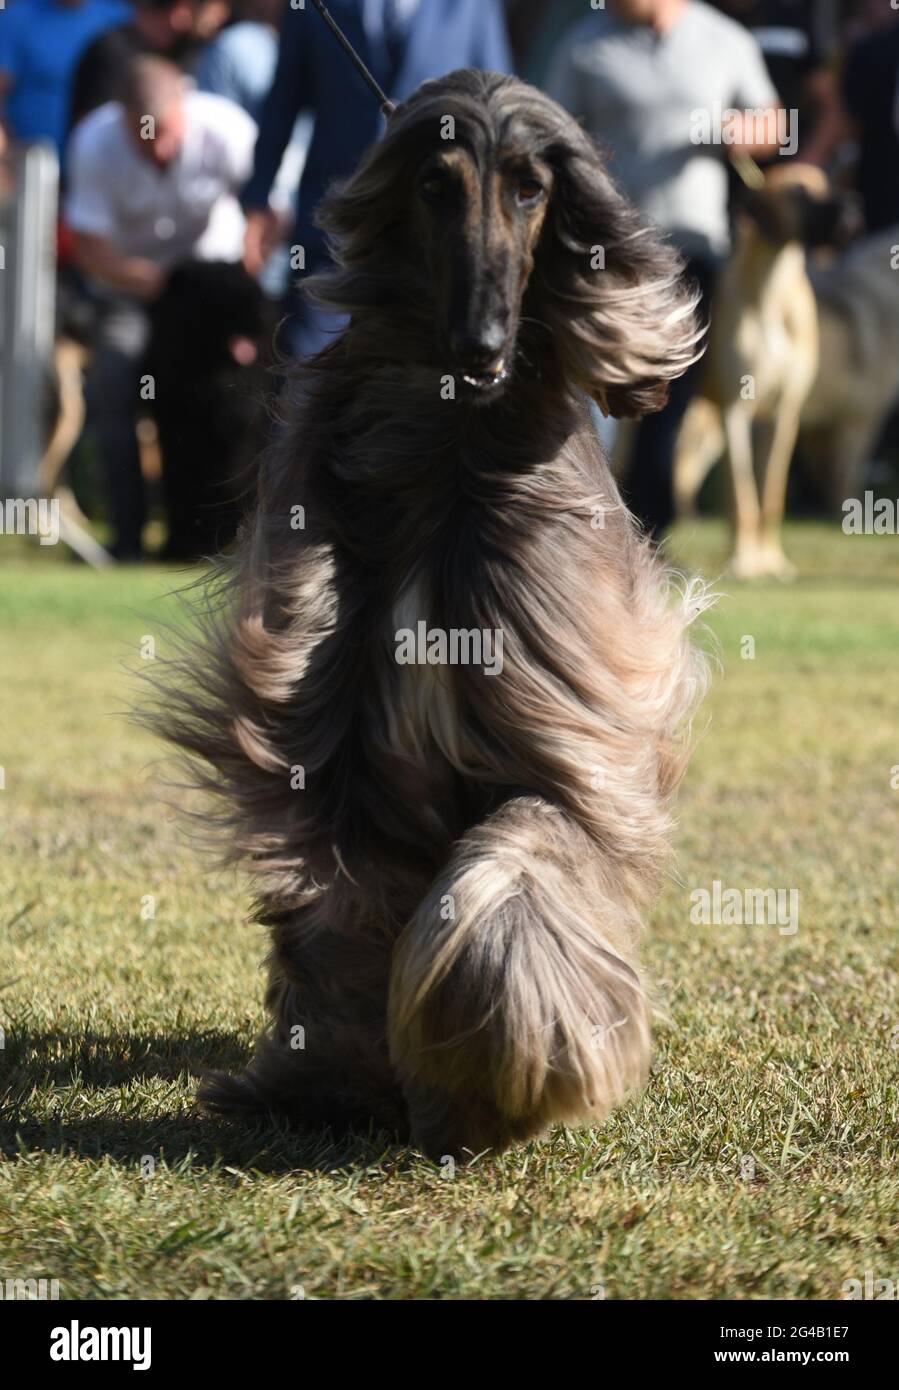 Afghanischer Hund auf einer Hundeausstellung der afghanische Hund ist ein Hund, der sich durch sein dickes, feines, seidiges Fell und seinen Schwanz mit einer Ringwellung am Ende auszeichnet Stockfoto